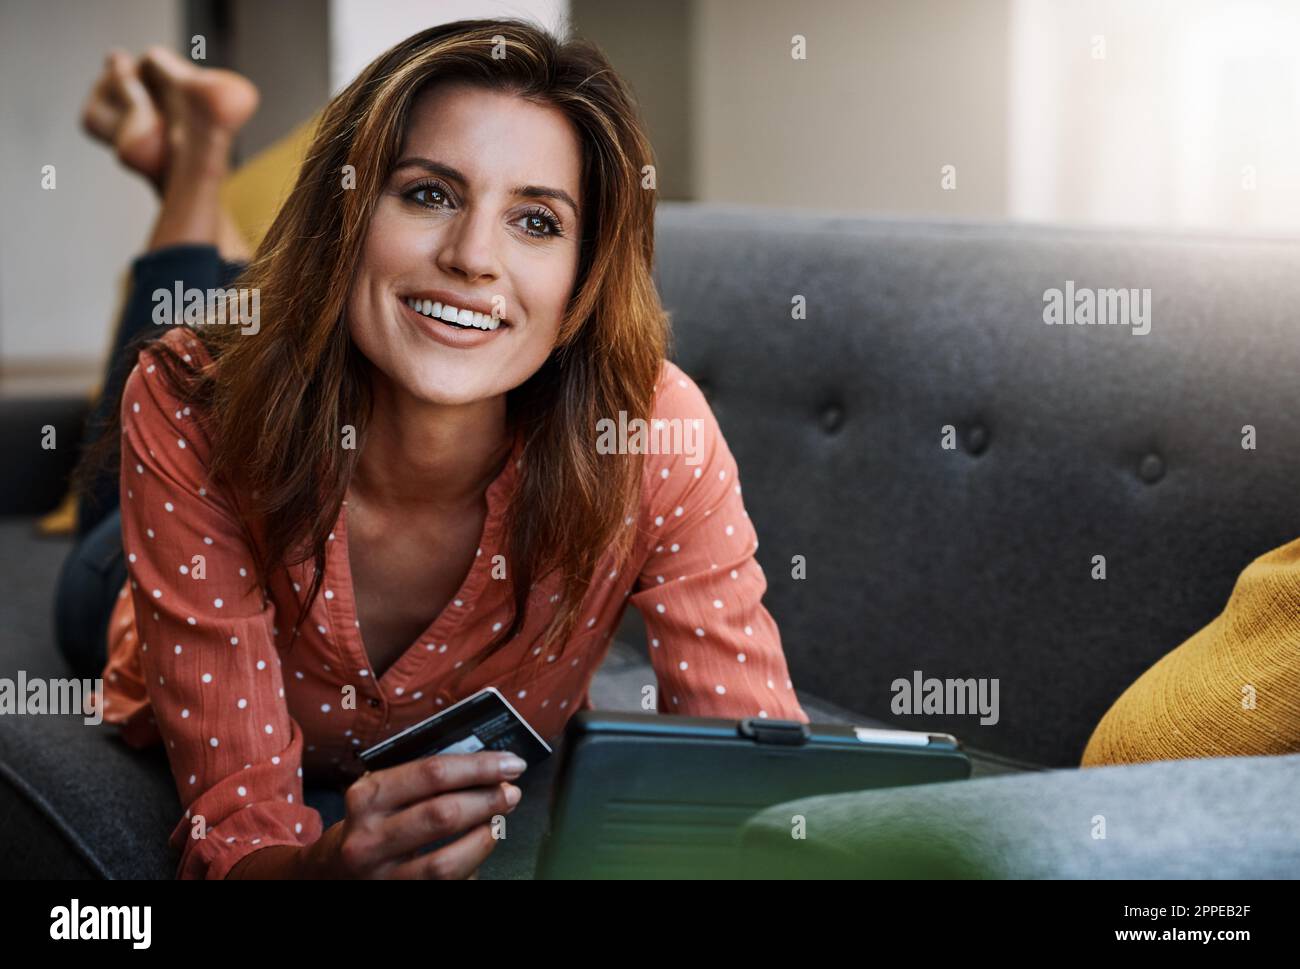 Le meilleur des deux mondes, le shopping dans le confort. une jeune femme attrayante utilisant une tablette numérique et une carte de crédit sur le canapé à la maison. Banque D'Images